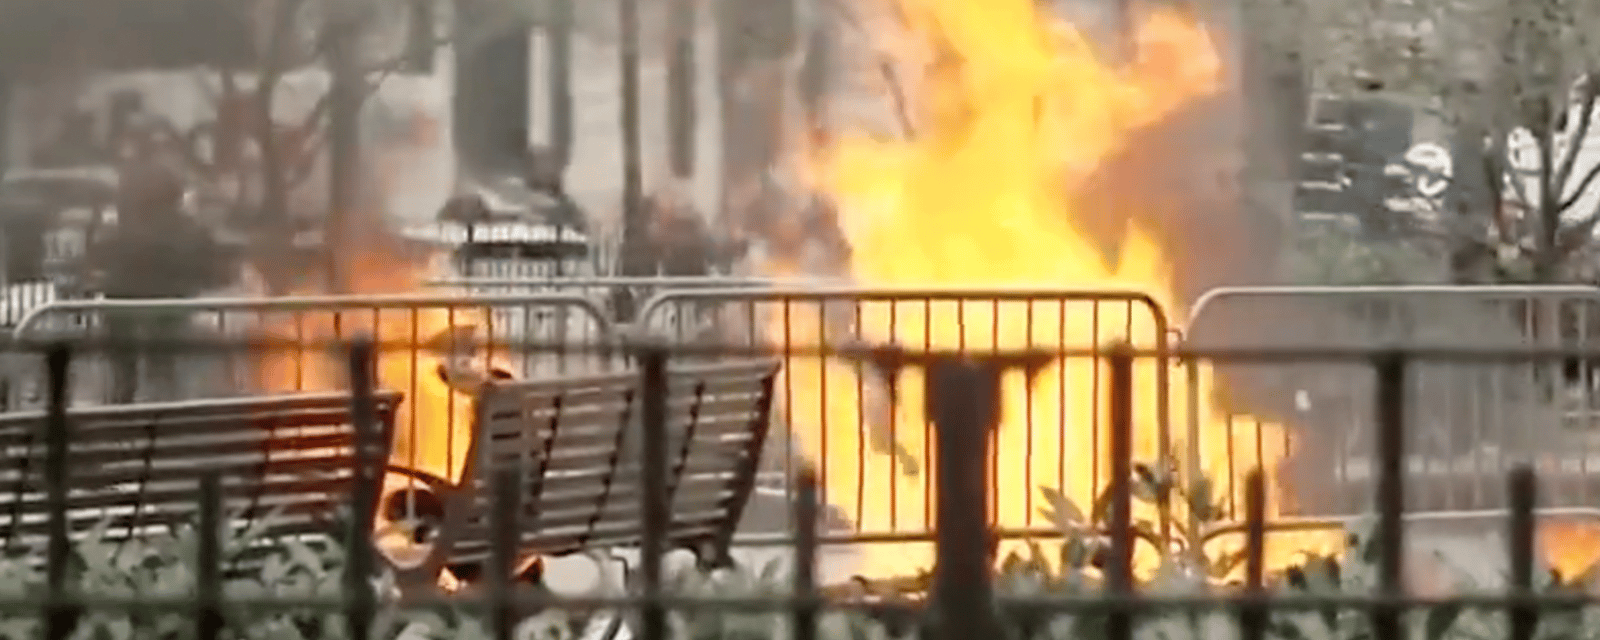 Procès de Donald Trump: Un homme essaye de s'immoler par le feu devant le tribunal